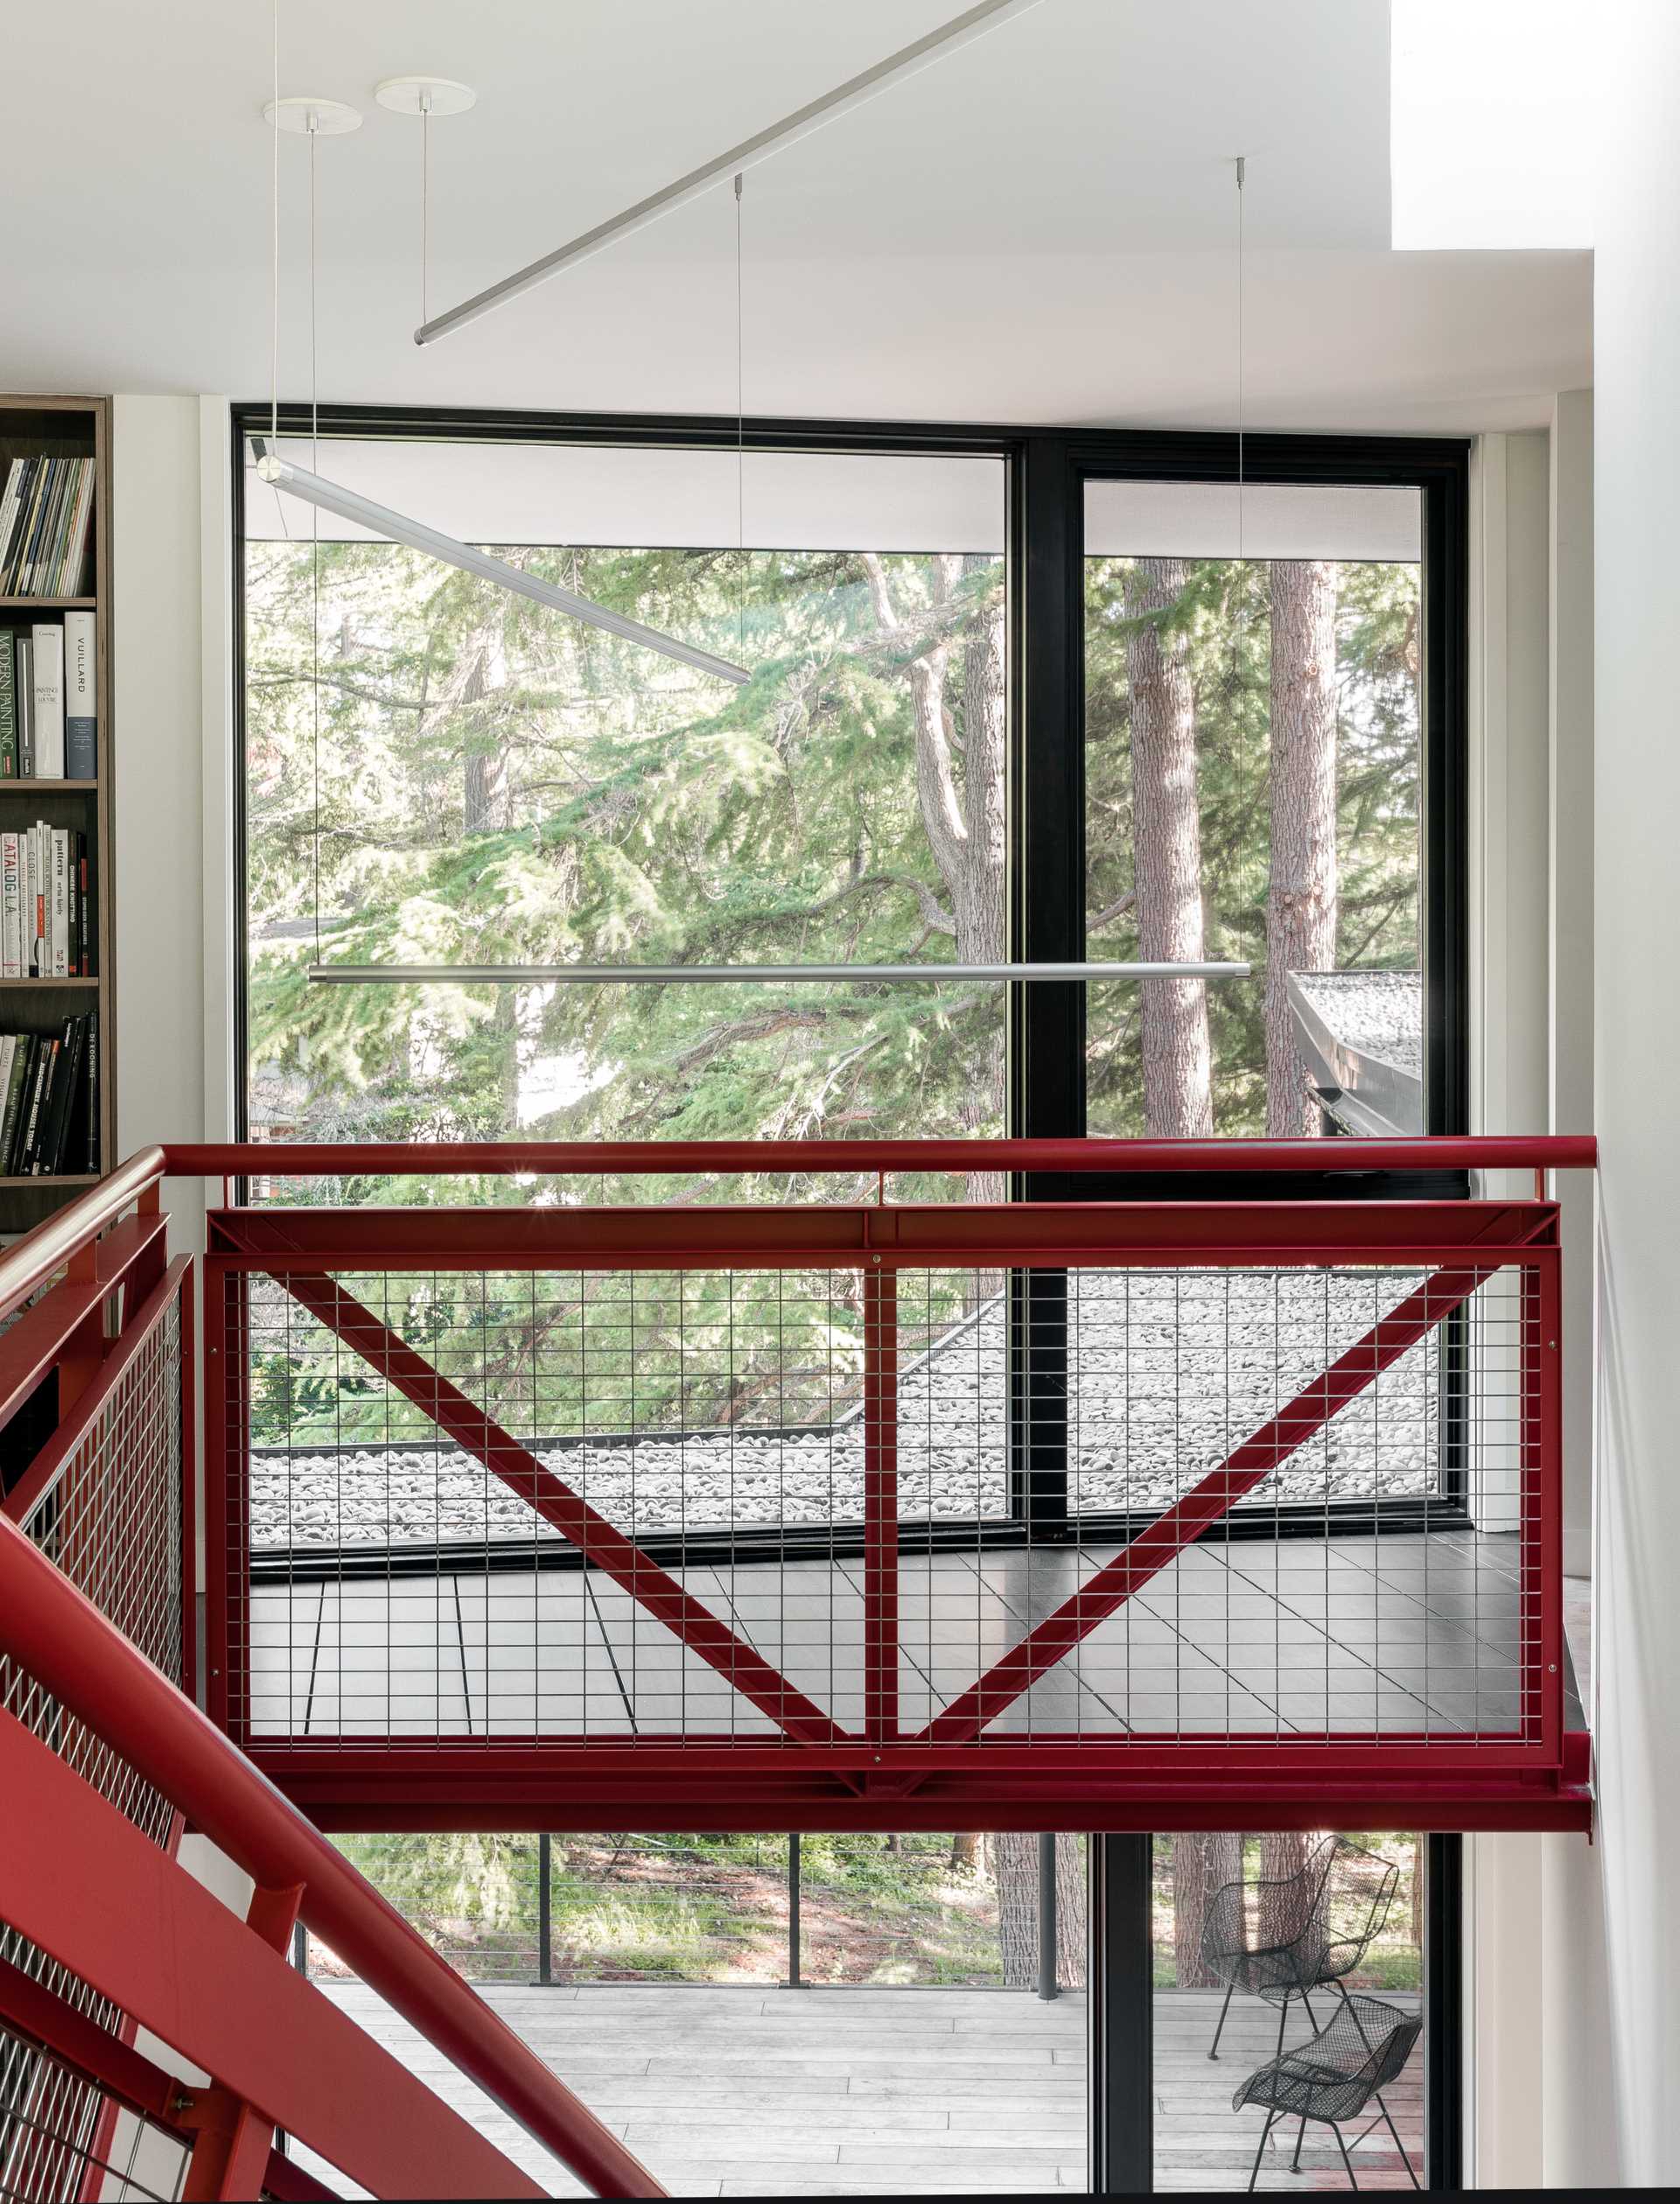 Красная металлическая лестница, спроектированная ДеФорестом, соединяет основной жилой уровень дома с верхним уровнем.